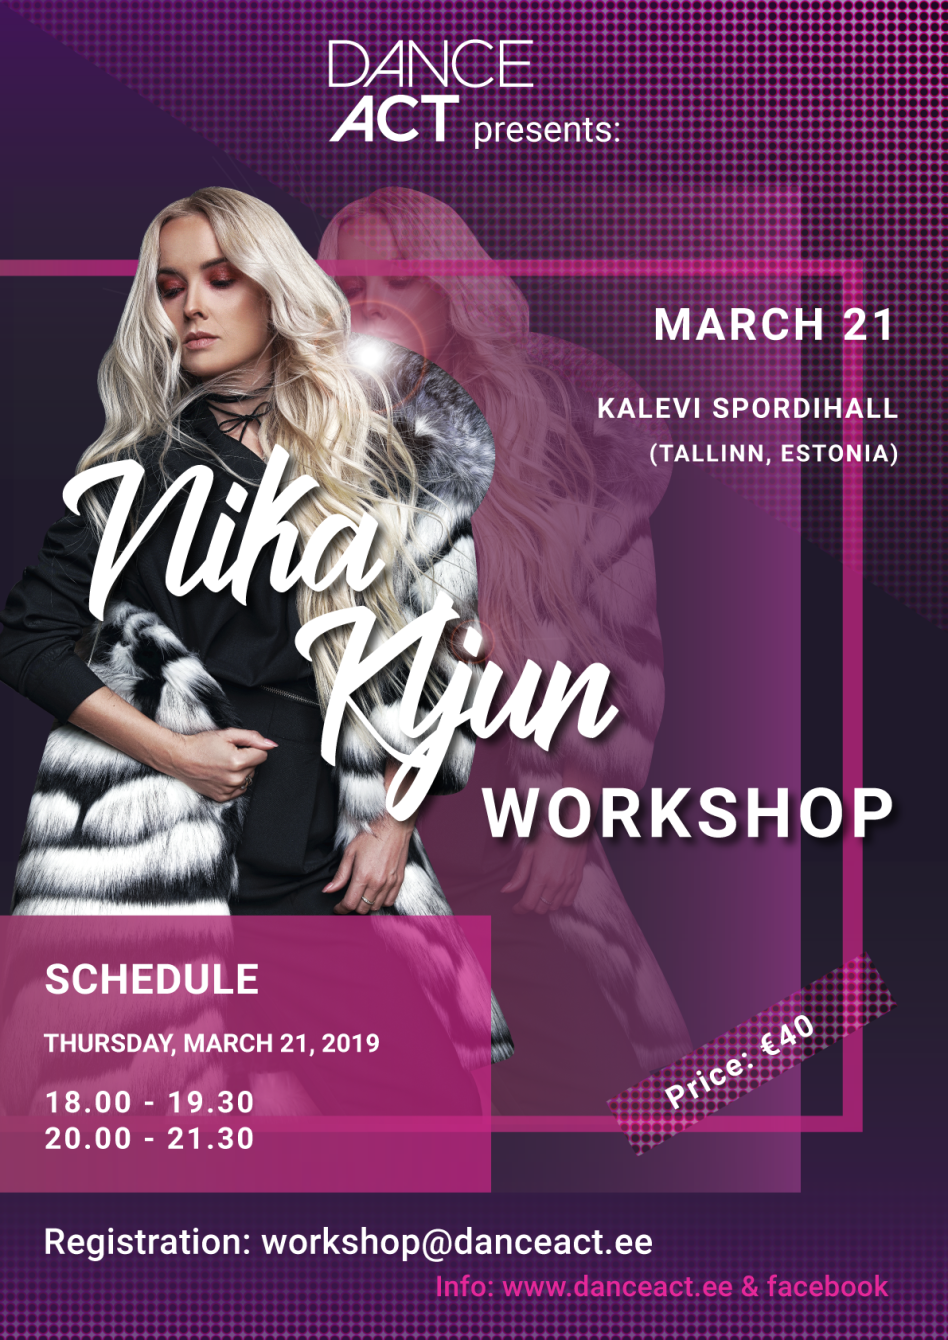 Nika Kljun workshop » 21 märts 2019 @ Kalevi Spordihallis (Tallinn, Estonia)